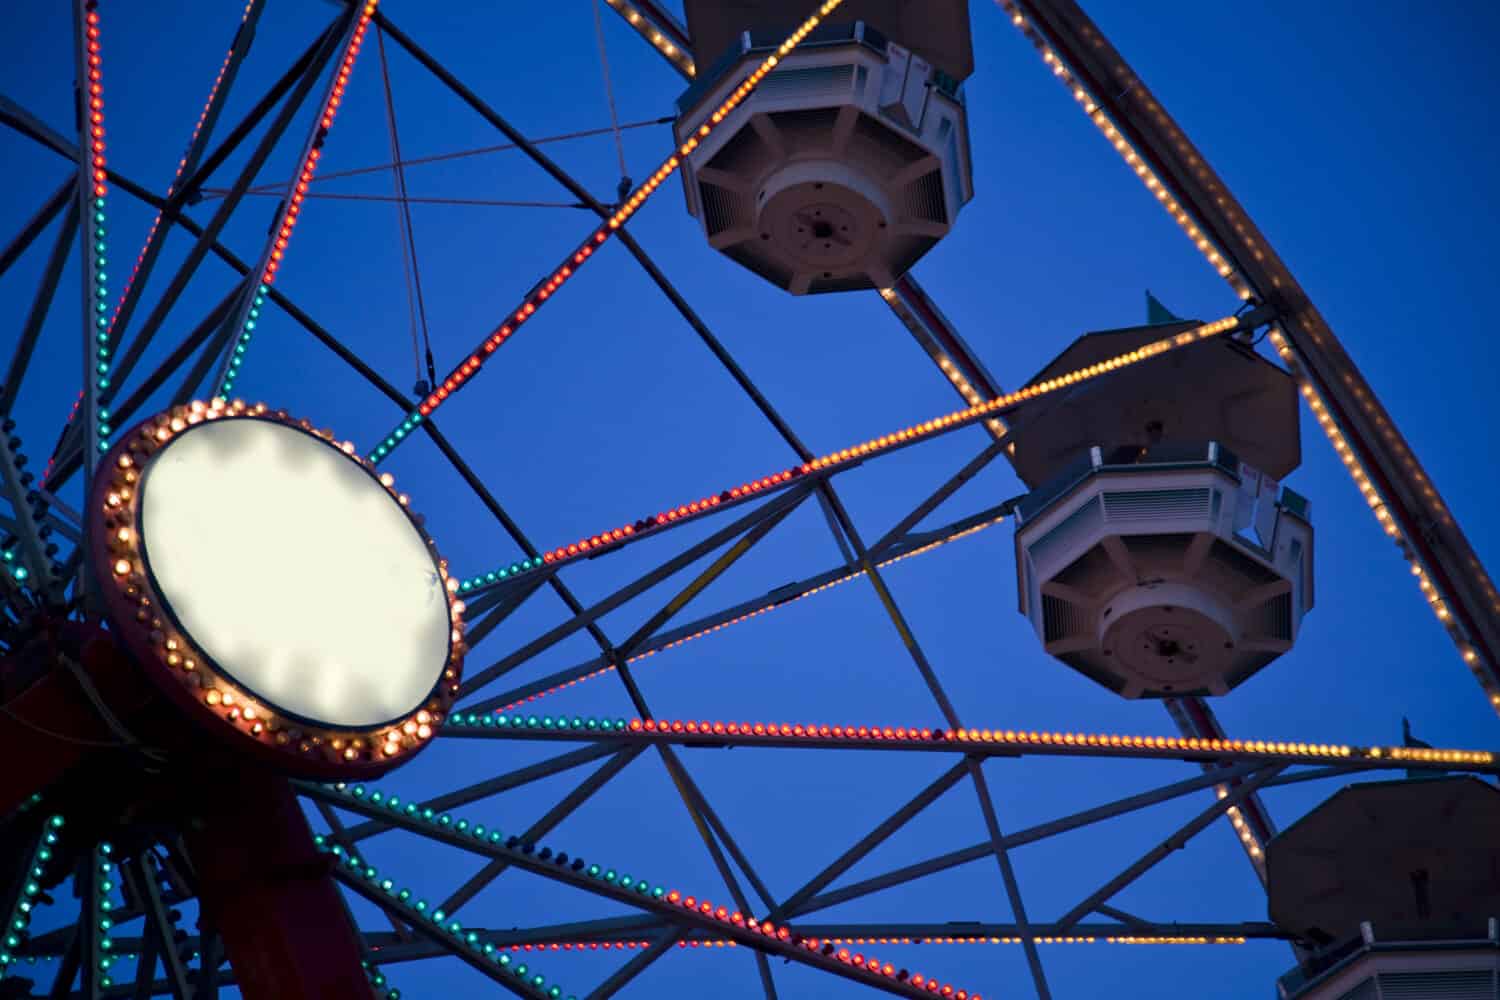 Ferris wheel detail at the Ohio State Fair